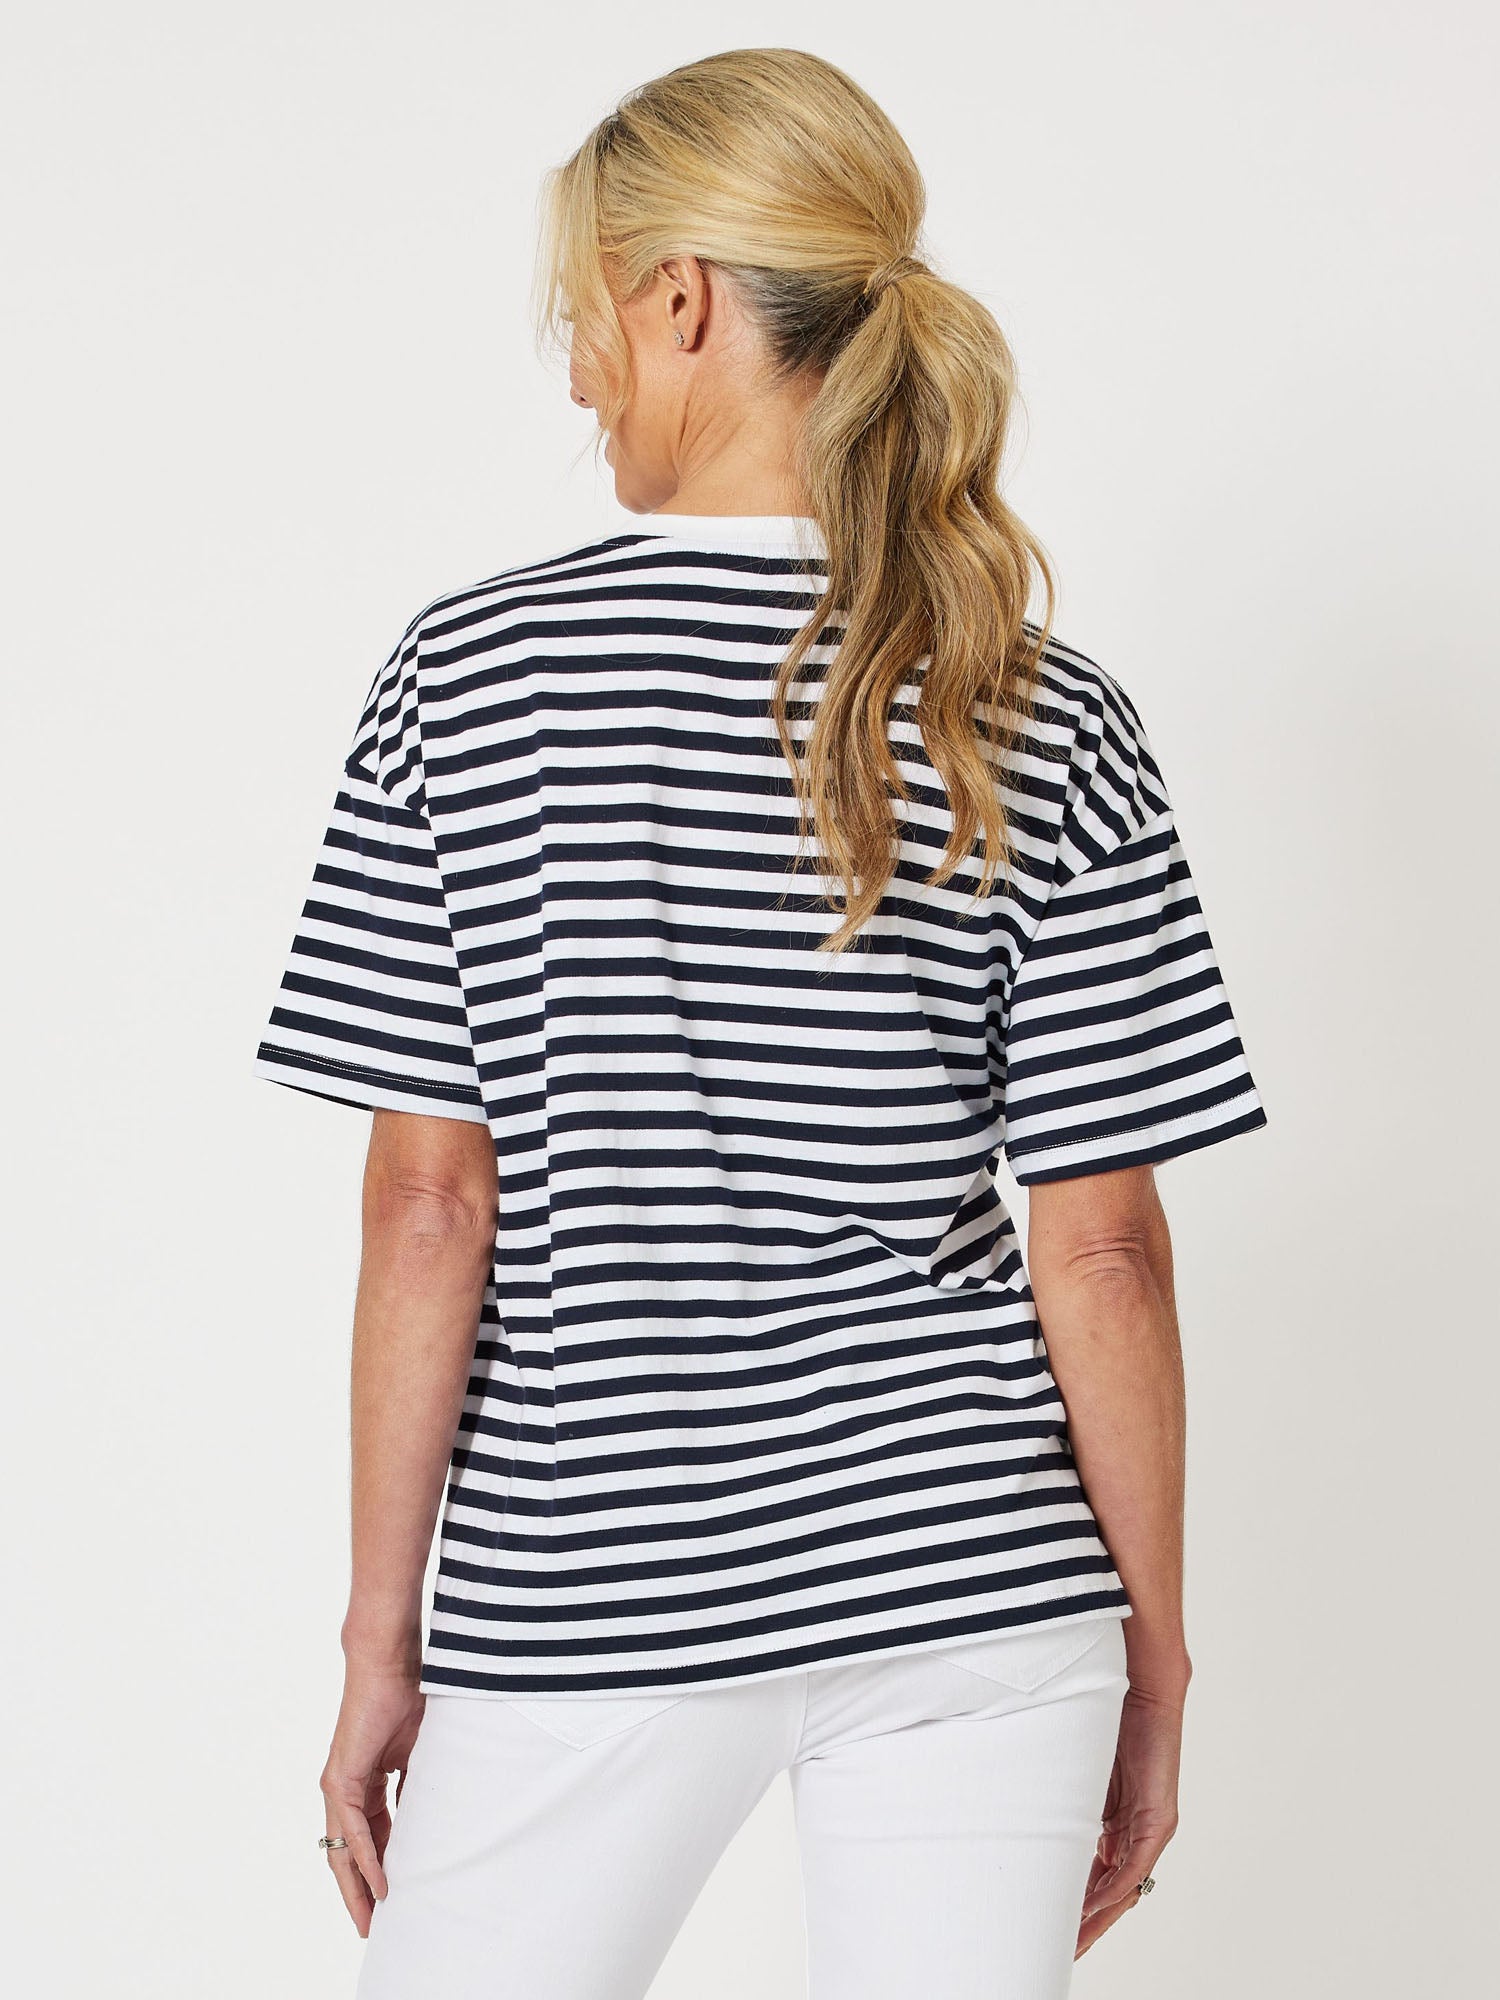 Saint Tropez Short Sleeve T-Shirt - Navy